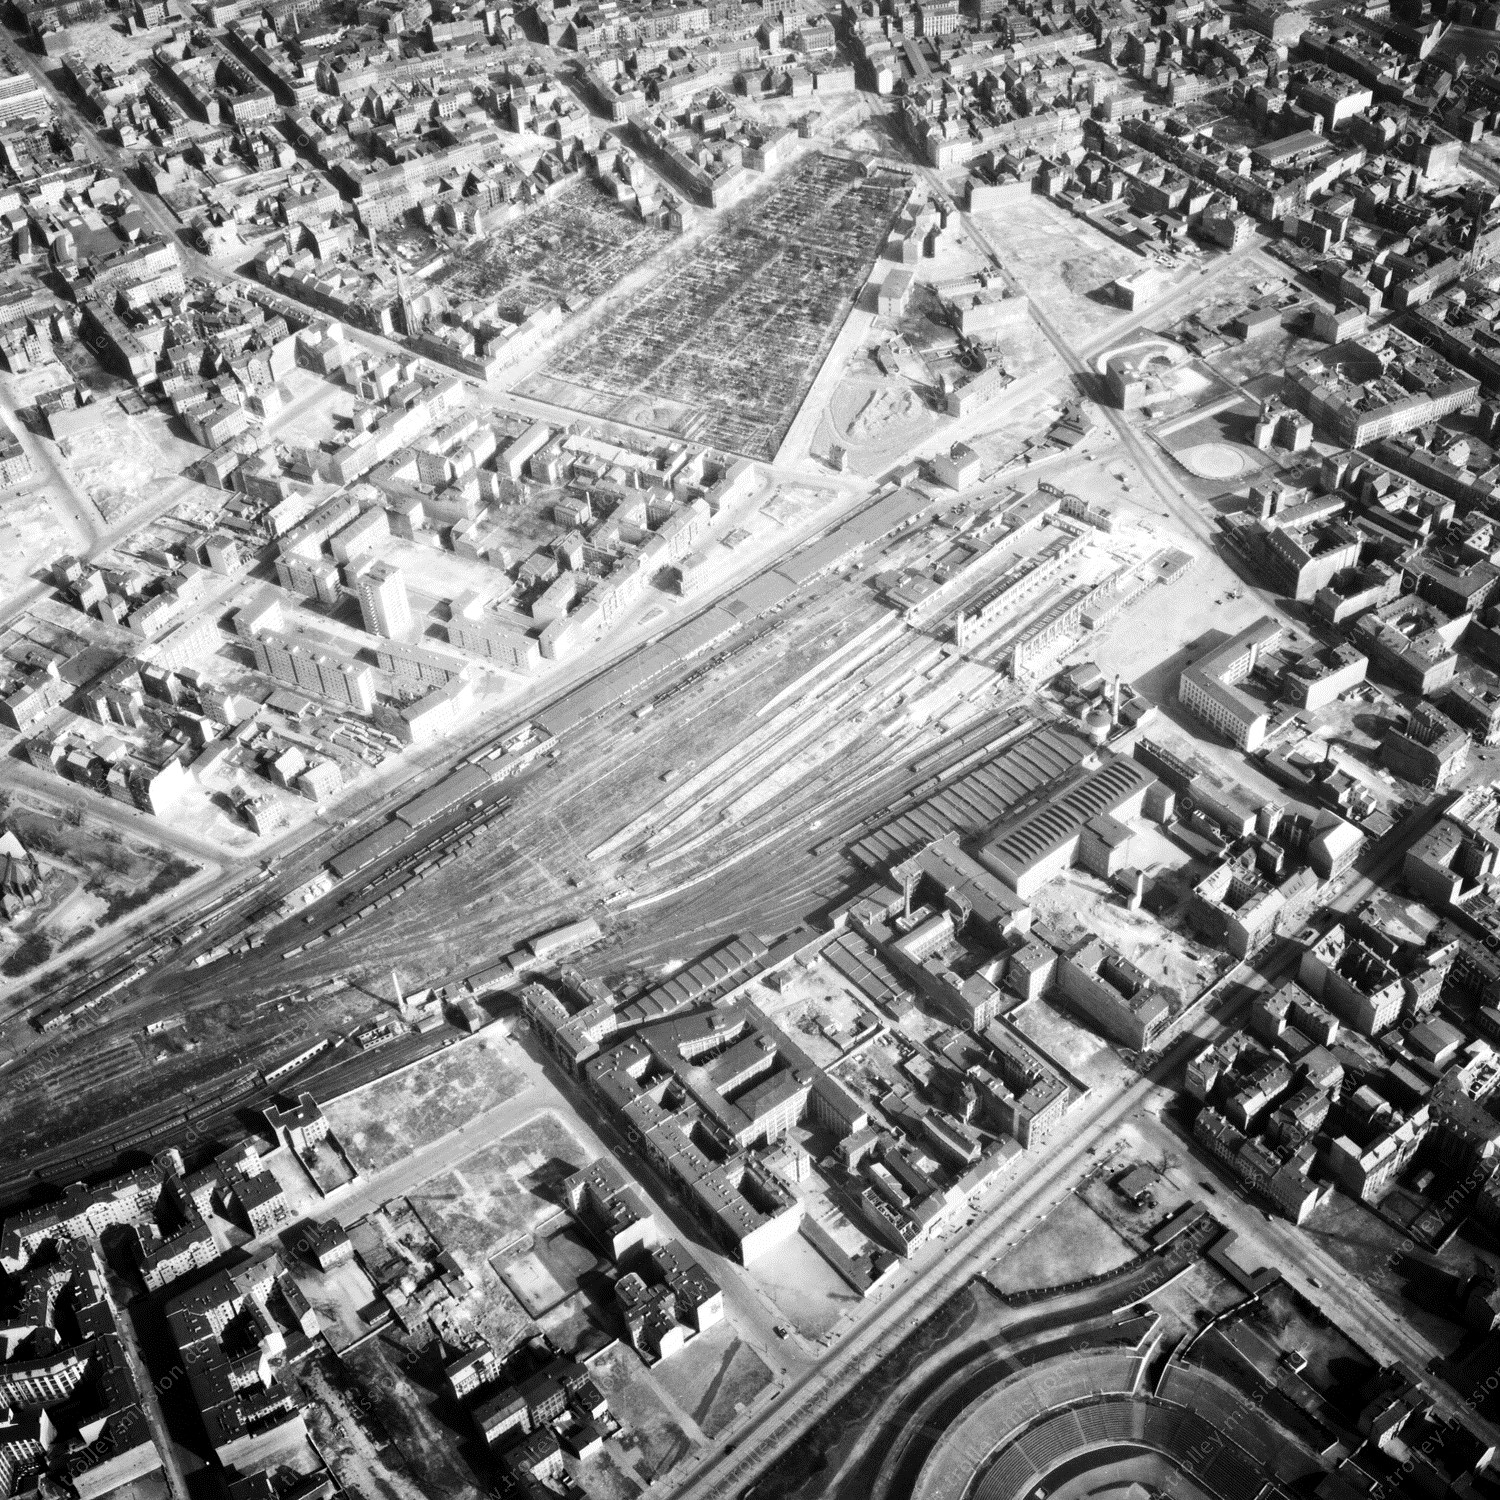 Alte Fotos und Luftbilder von Berlin - Luftbildaufnahme Nr. 01 - Historische Luftaufnahmen von West-Berlin aus dem Jahr 1954 - Flugstrecke Romeo